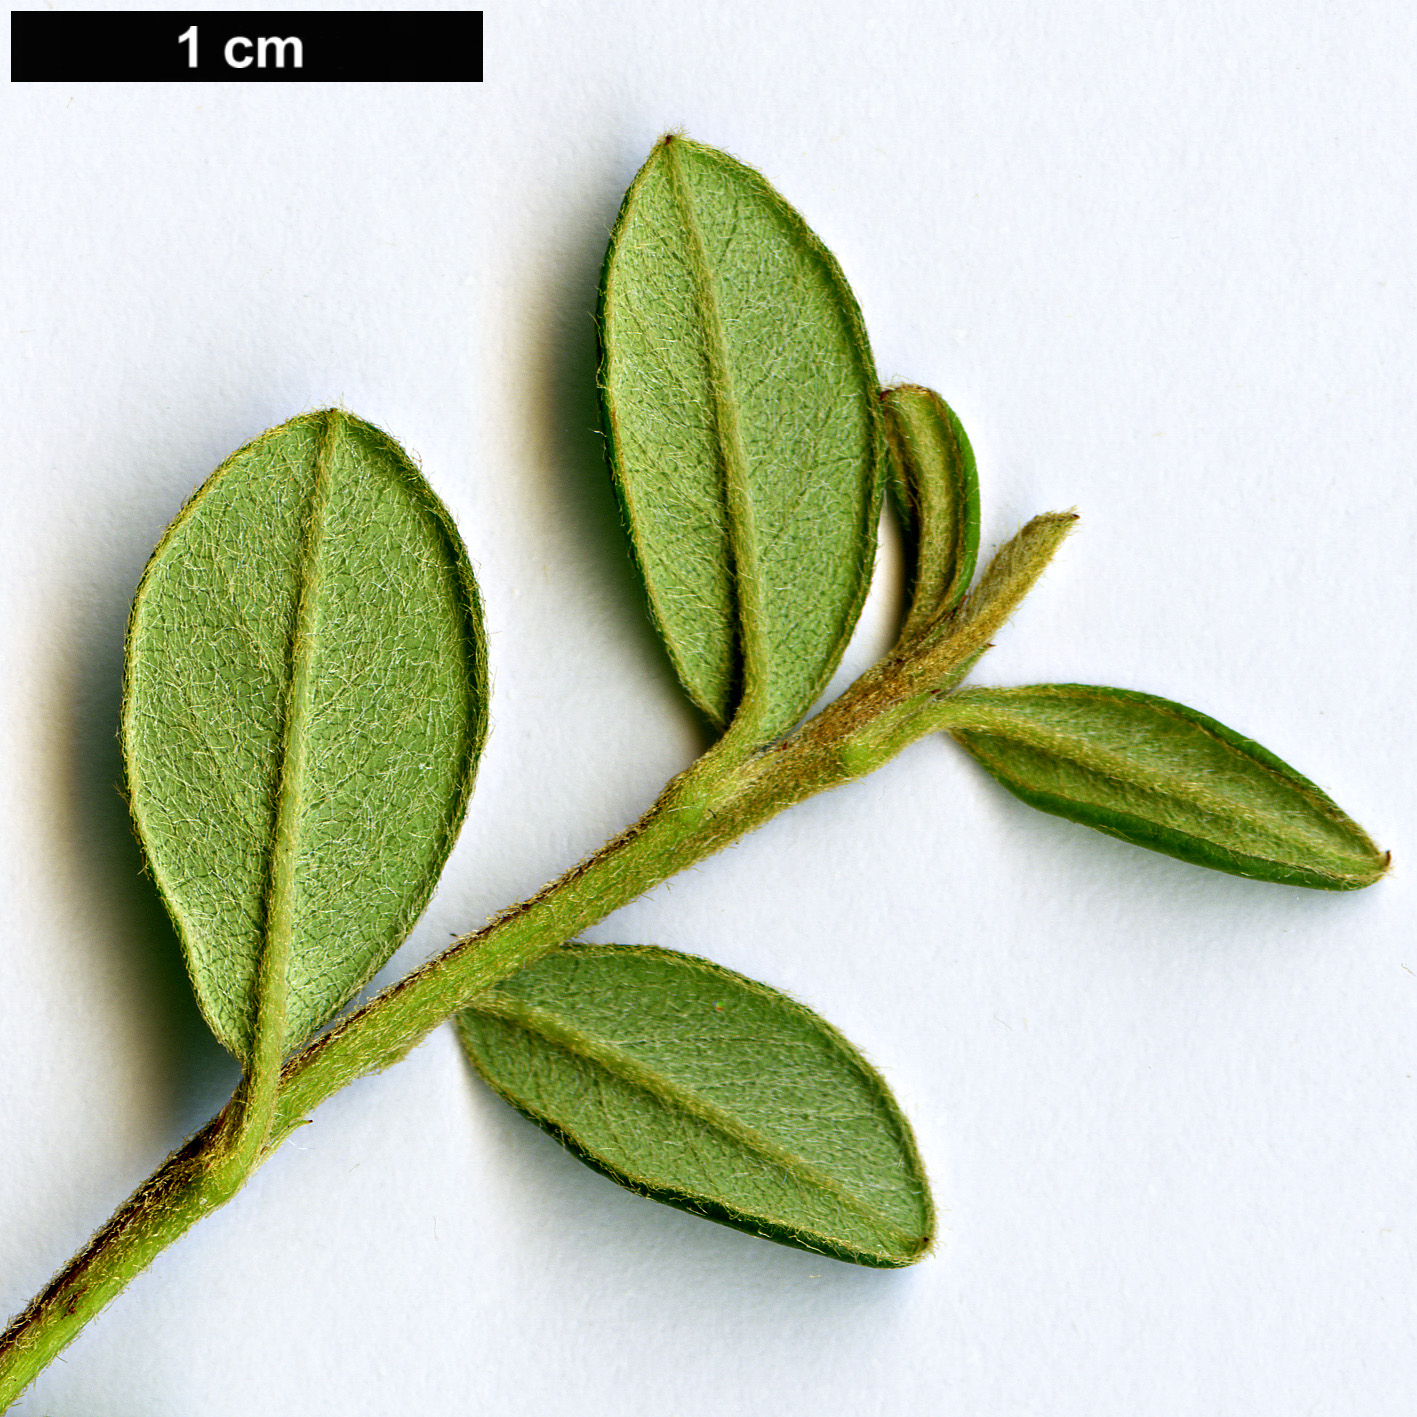 High resolution image: Family: Rosaceae - Genus: Cotoneaster - Taxon: ×suecicus (C.conspicuus × C.dammeri)